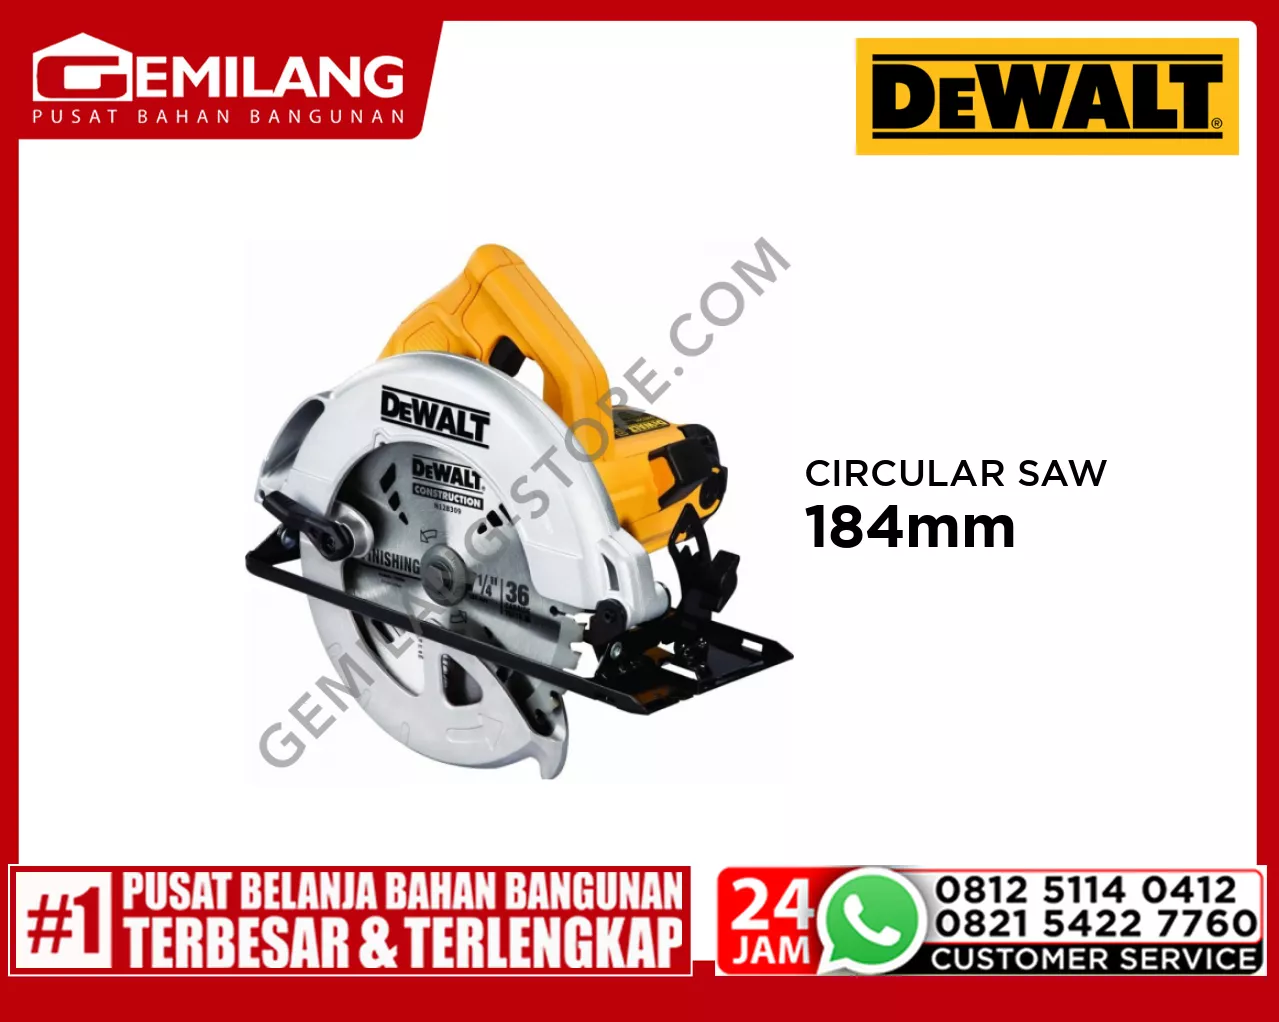 DEWALT CIRCULAR SAW 184mm 1200w DWE561-B1